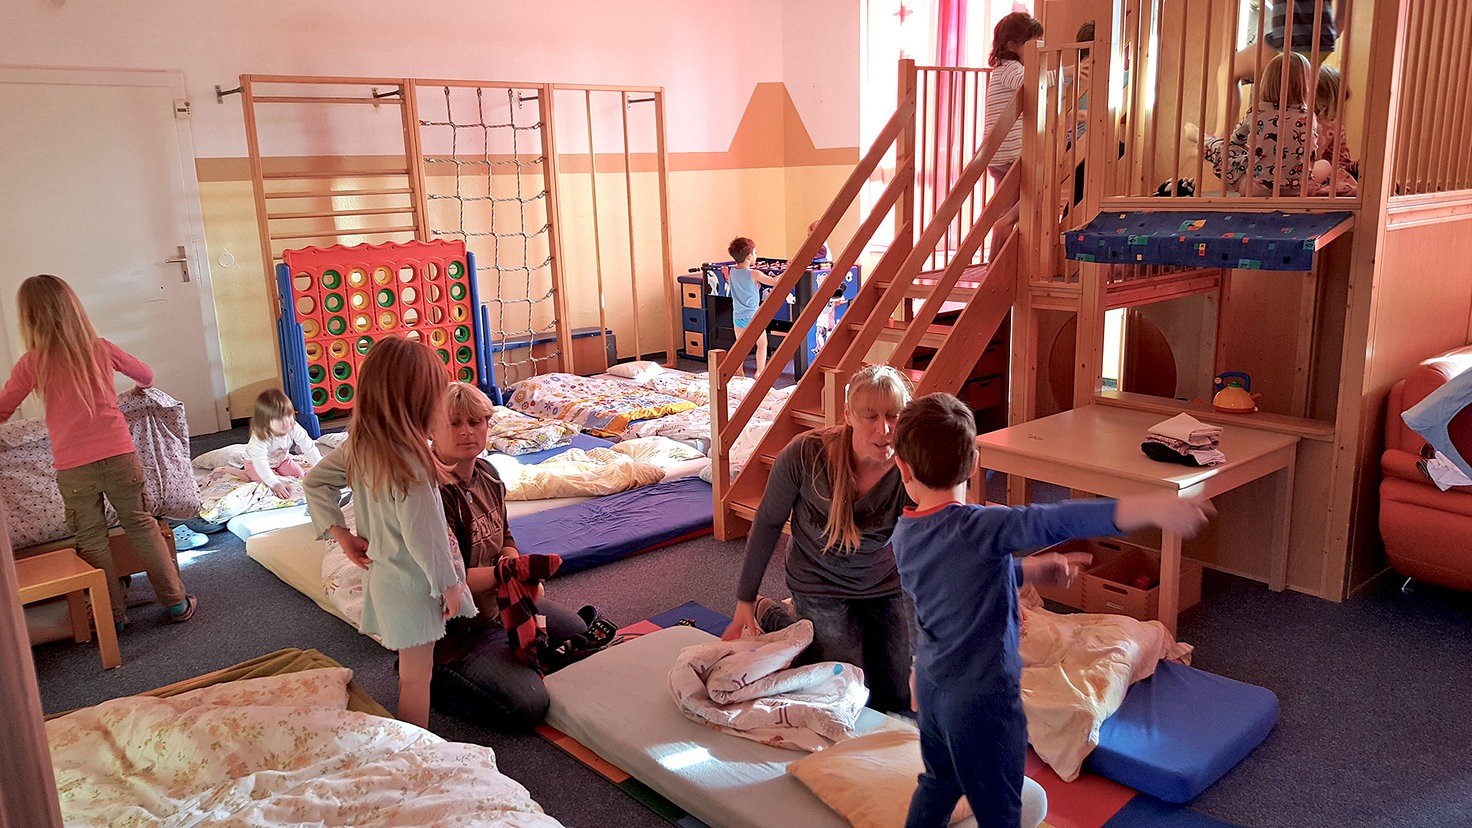 Детский сад в германии: правила поведения для детей